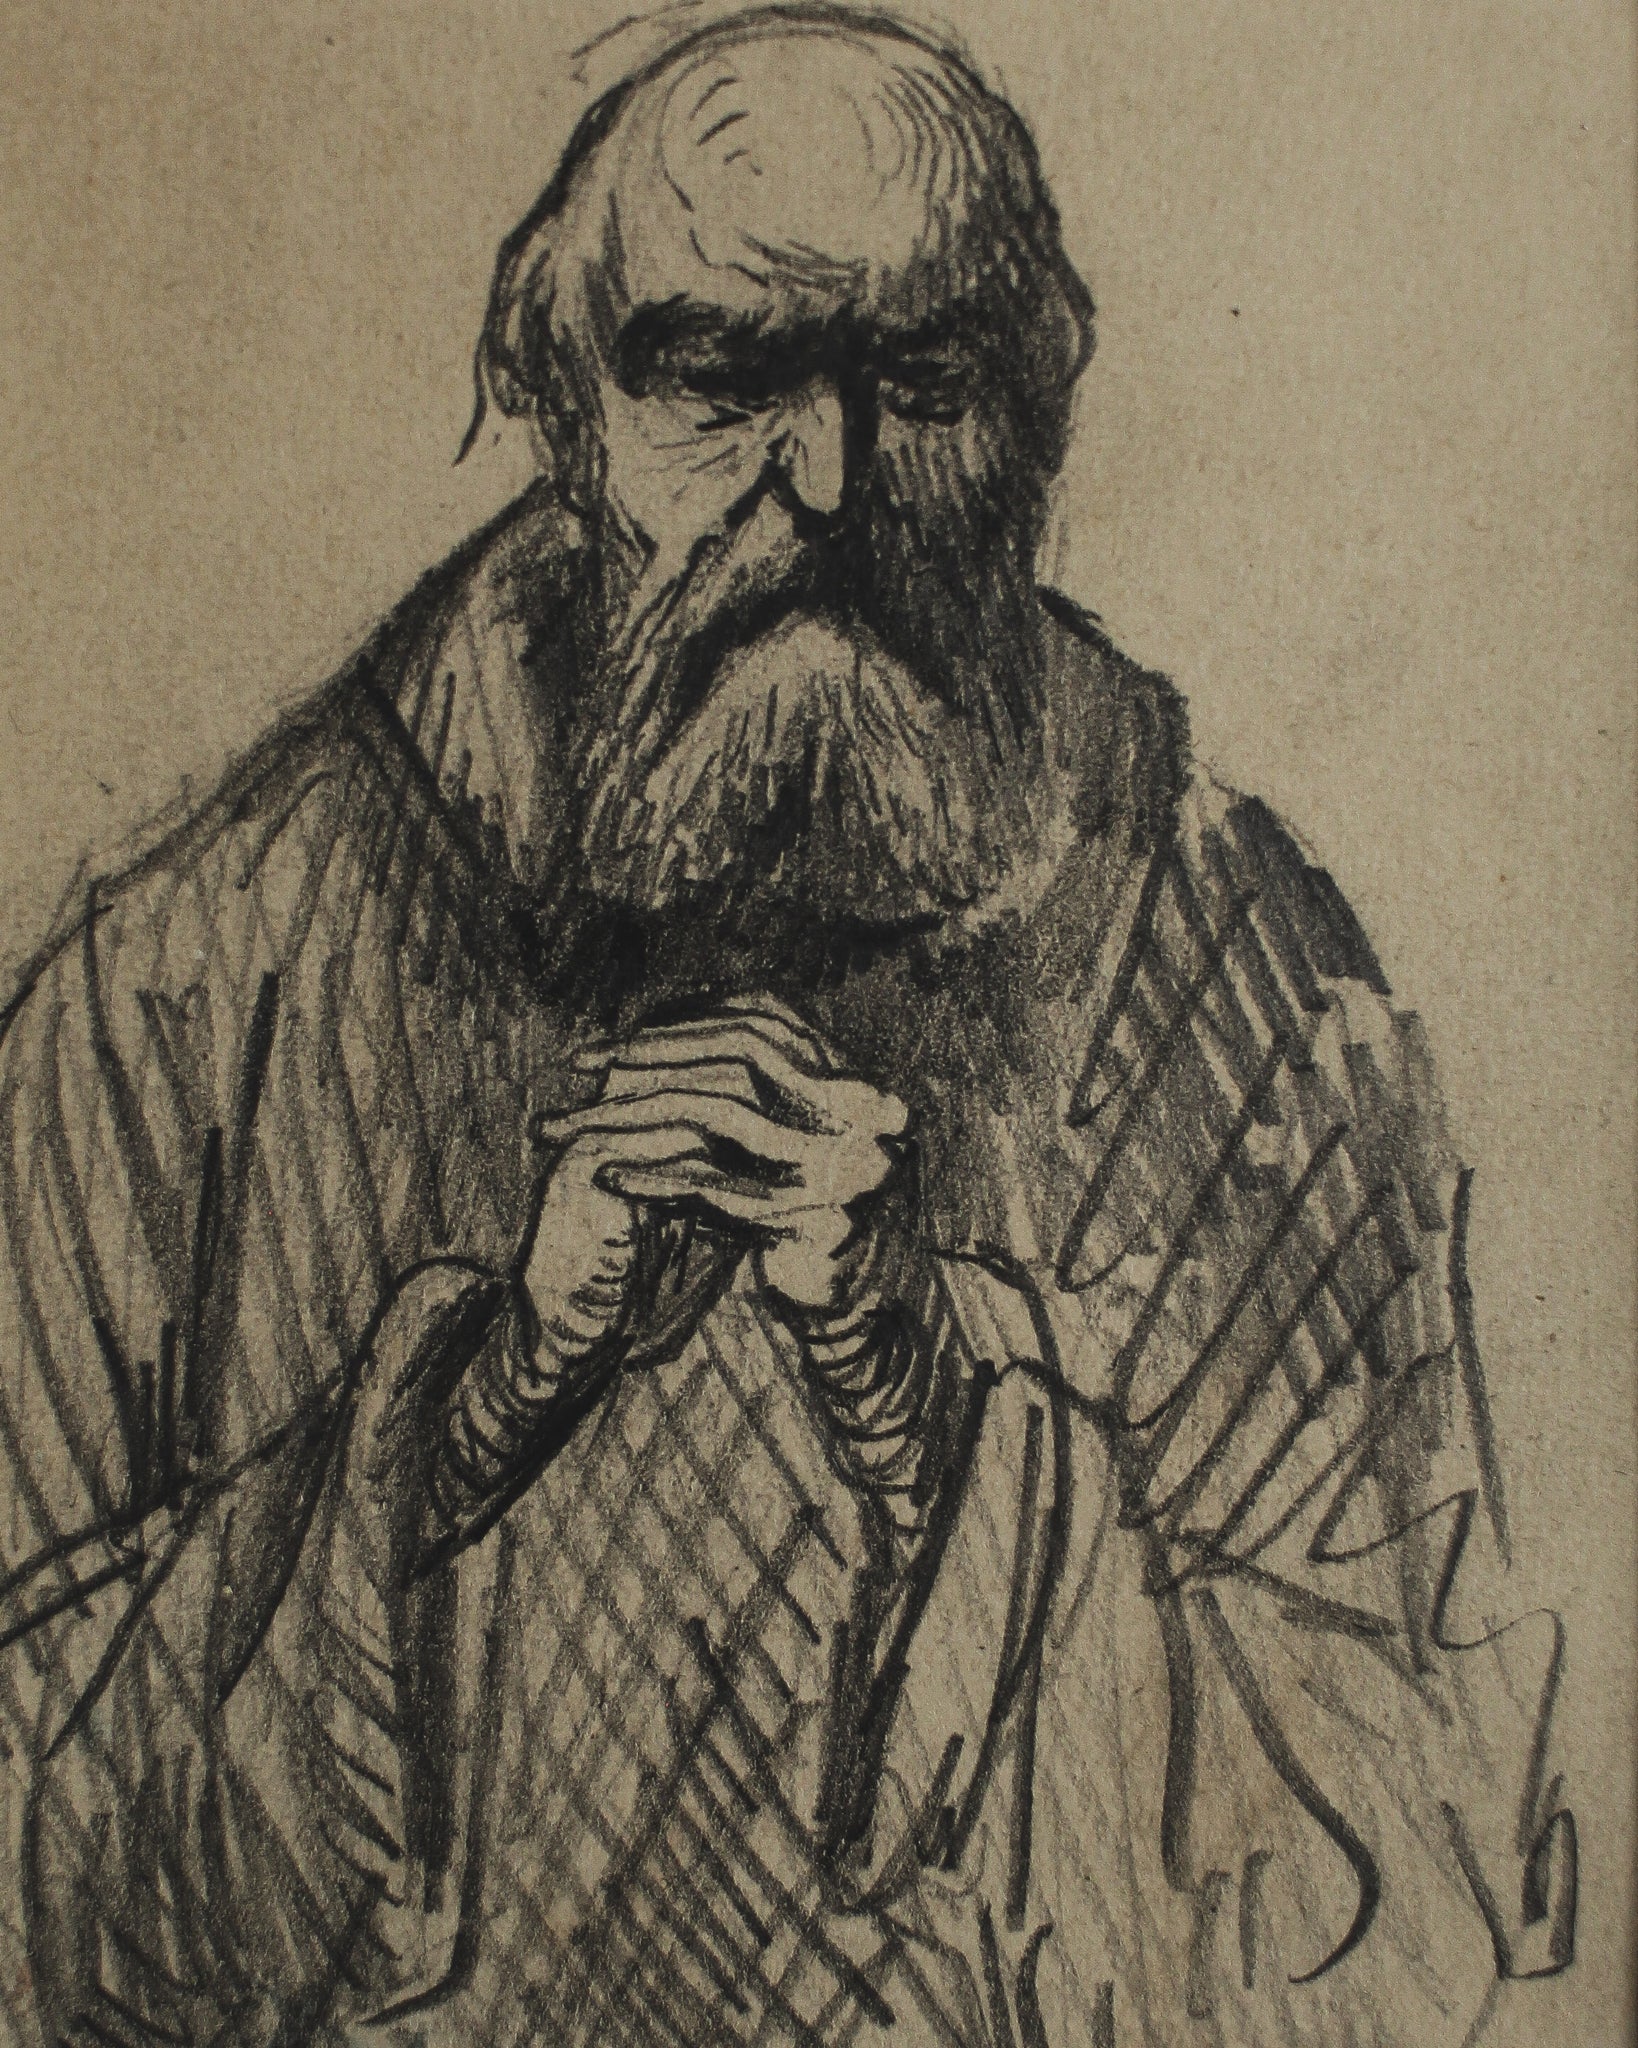 Sketch of Bearded Man